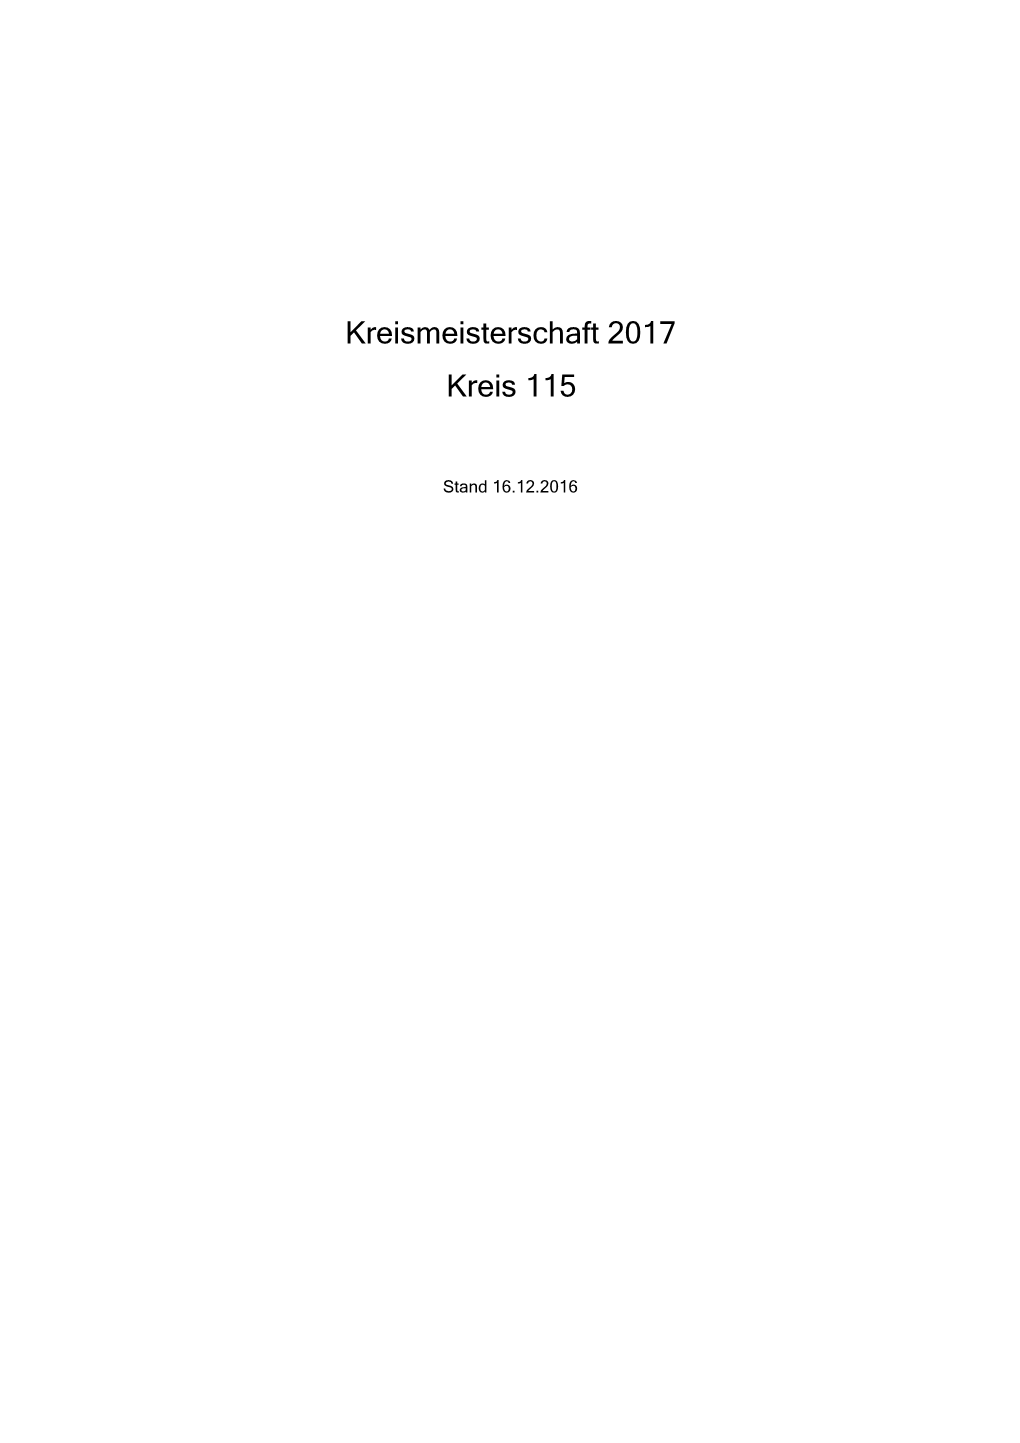 Kreismeisterschaft 2017 Kreis 115